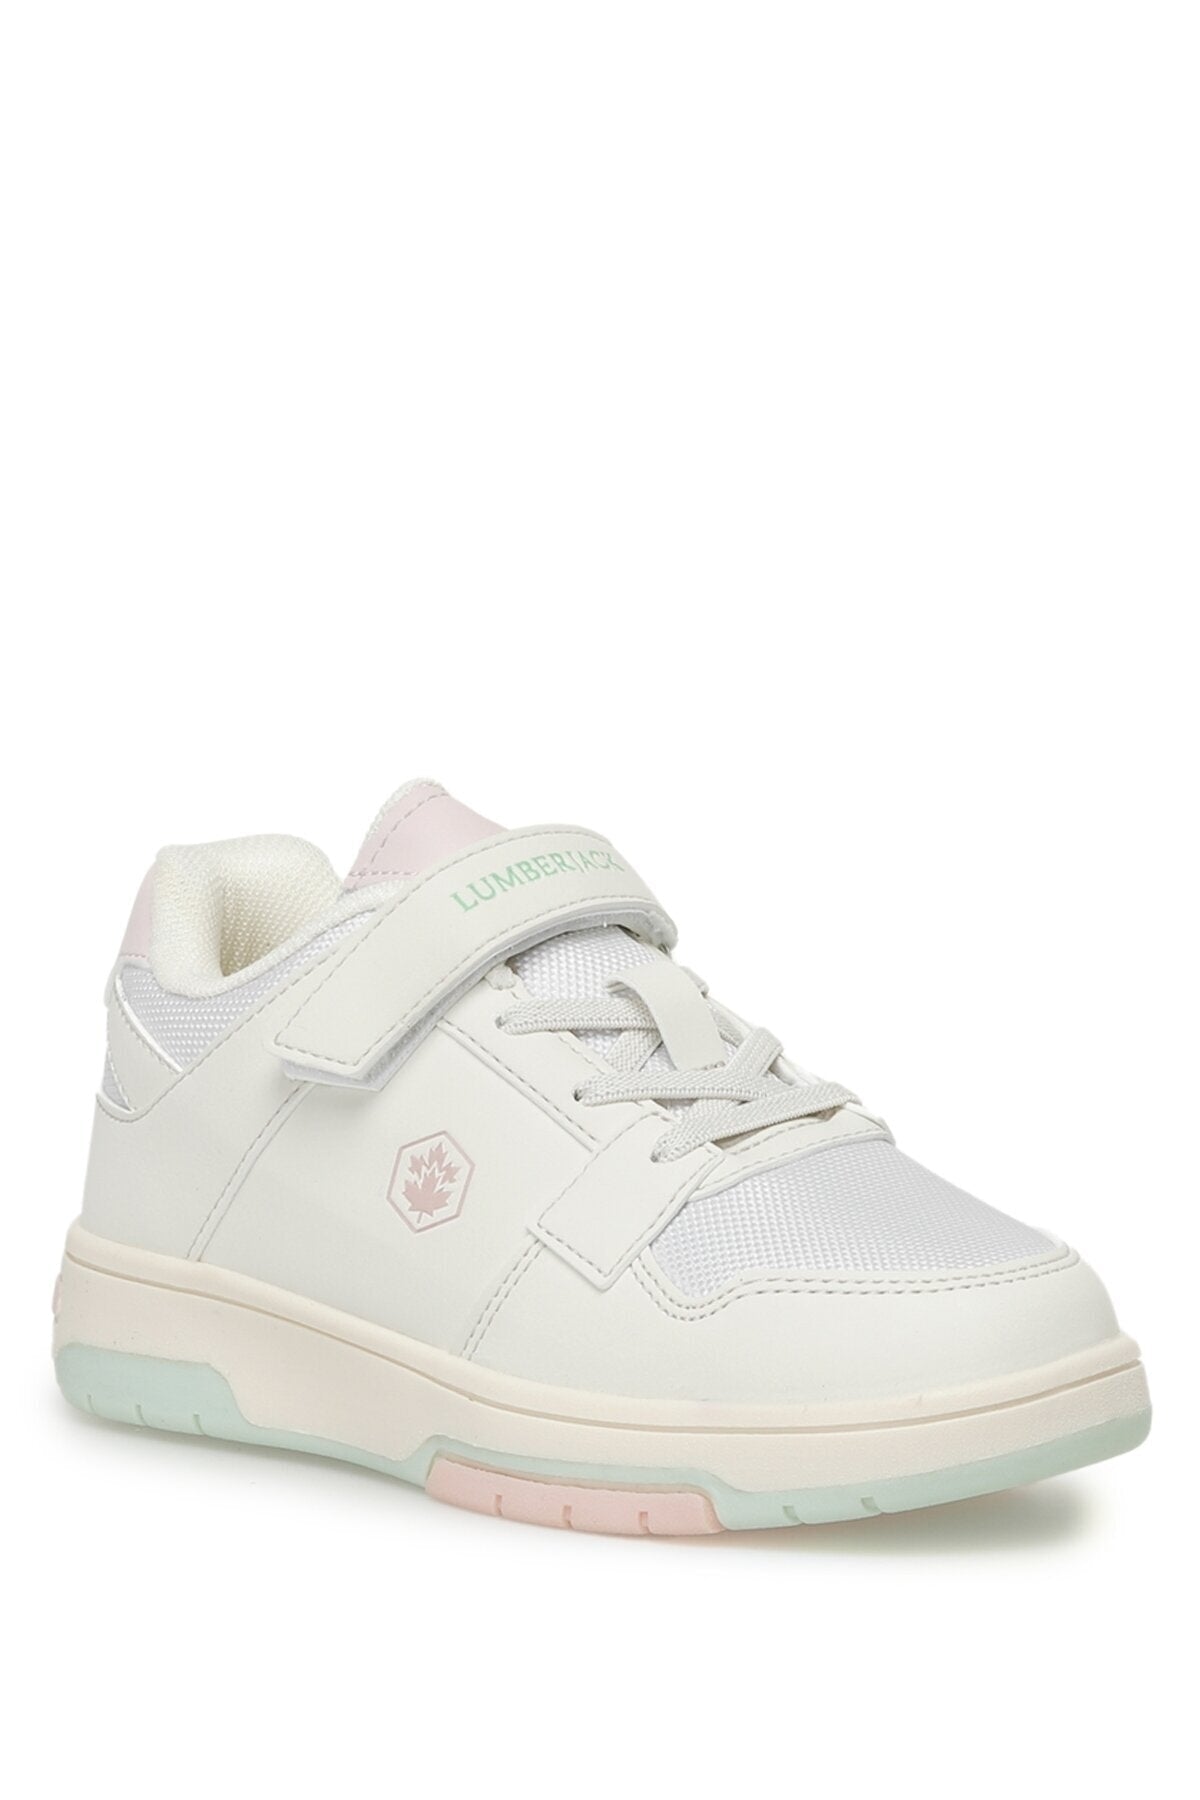 Sake 3fx Off-White Girls' Sneaker